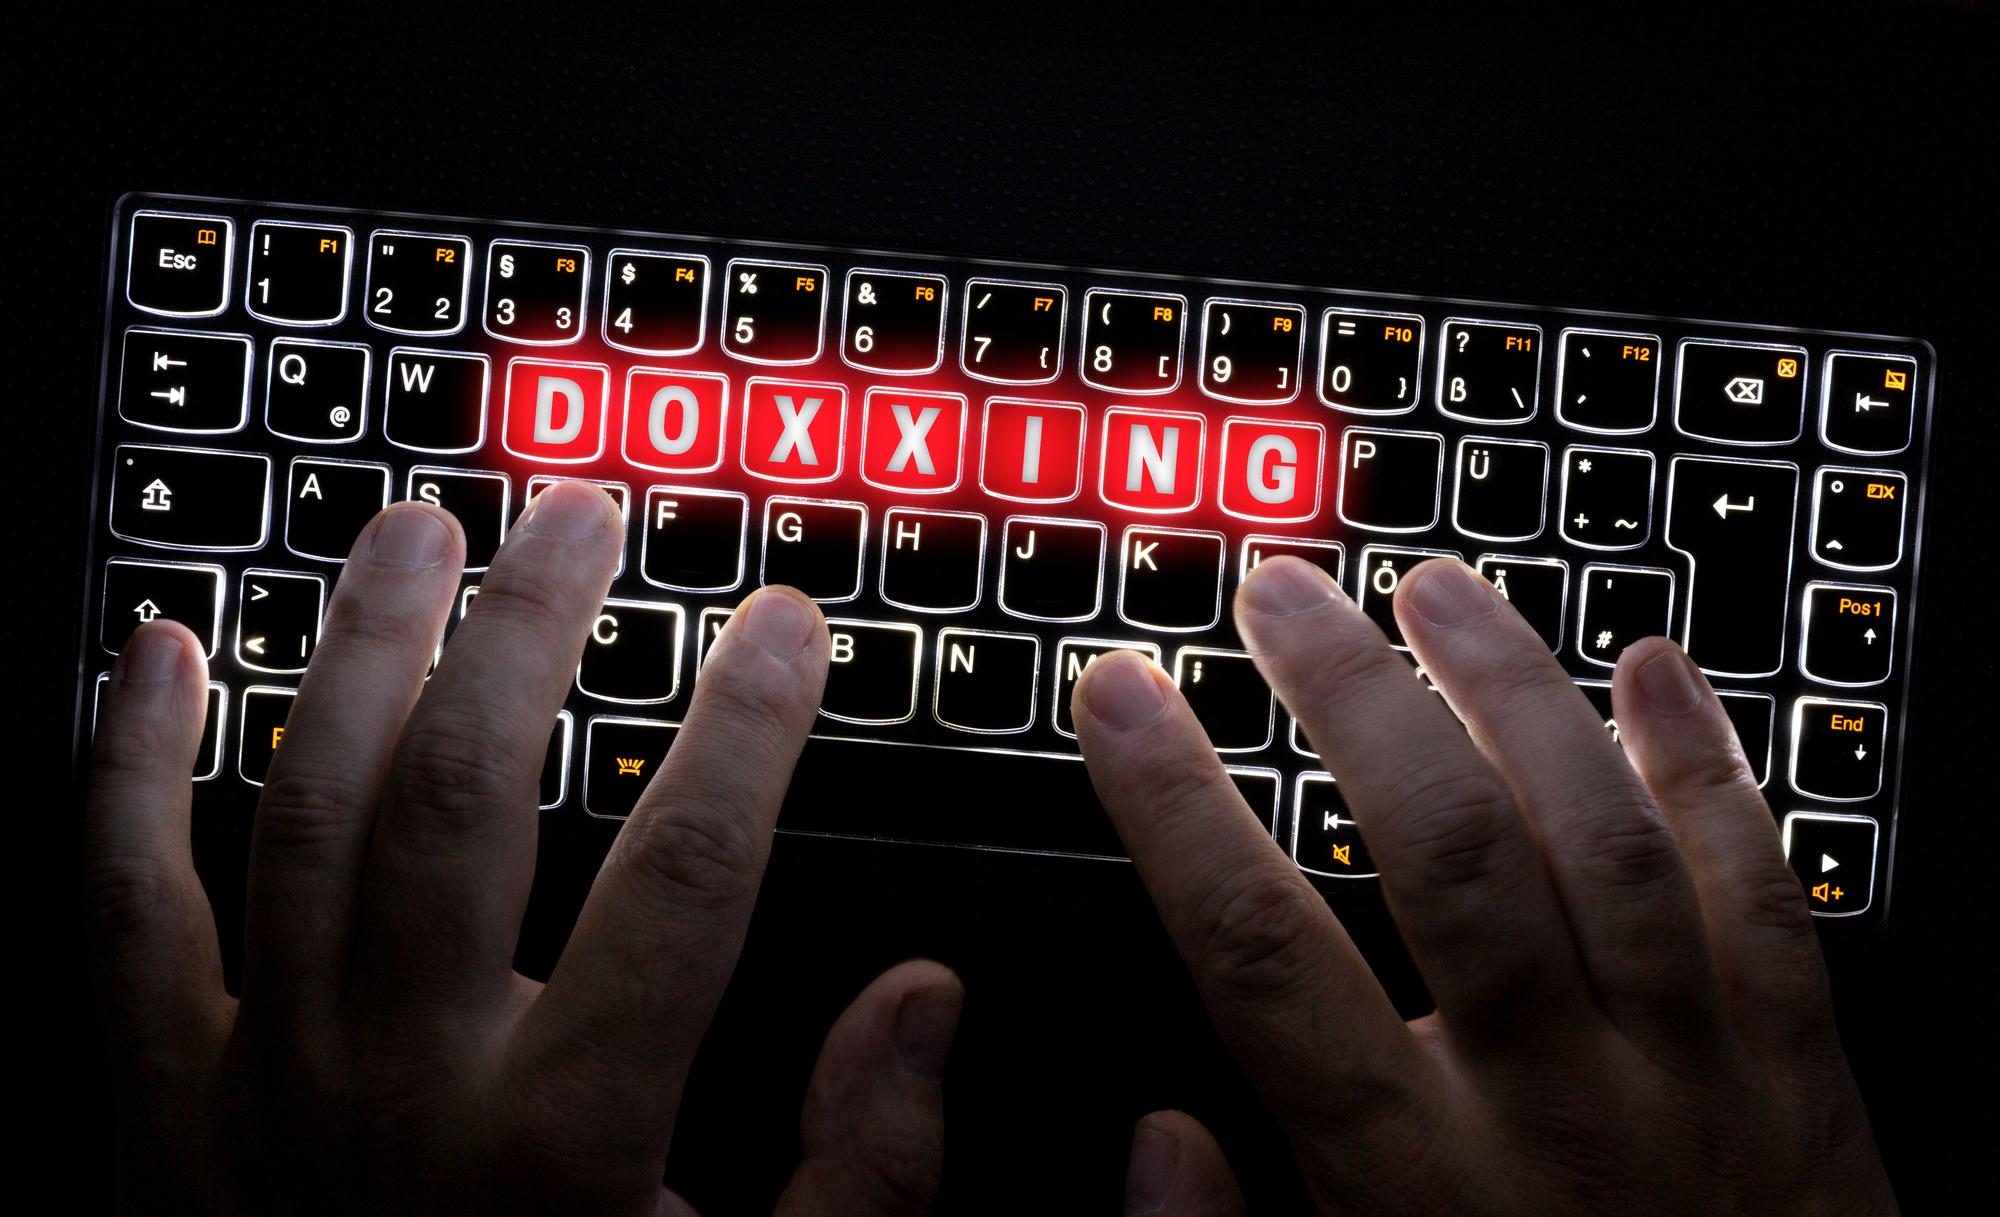 Ein Keyboard auf dem das wort Doxxing farblich hervorgehoben ist